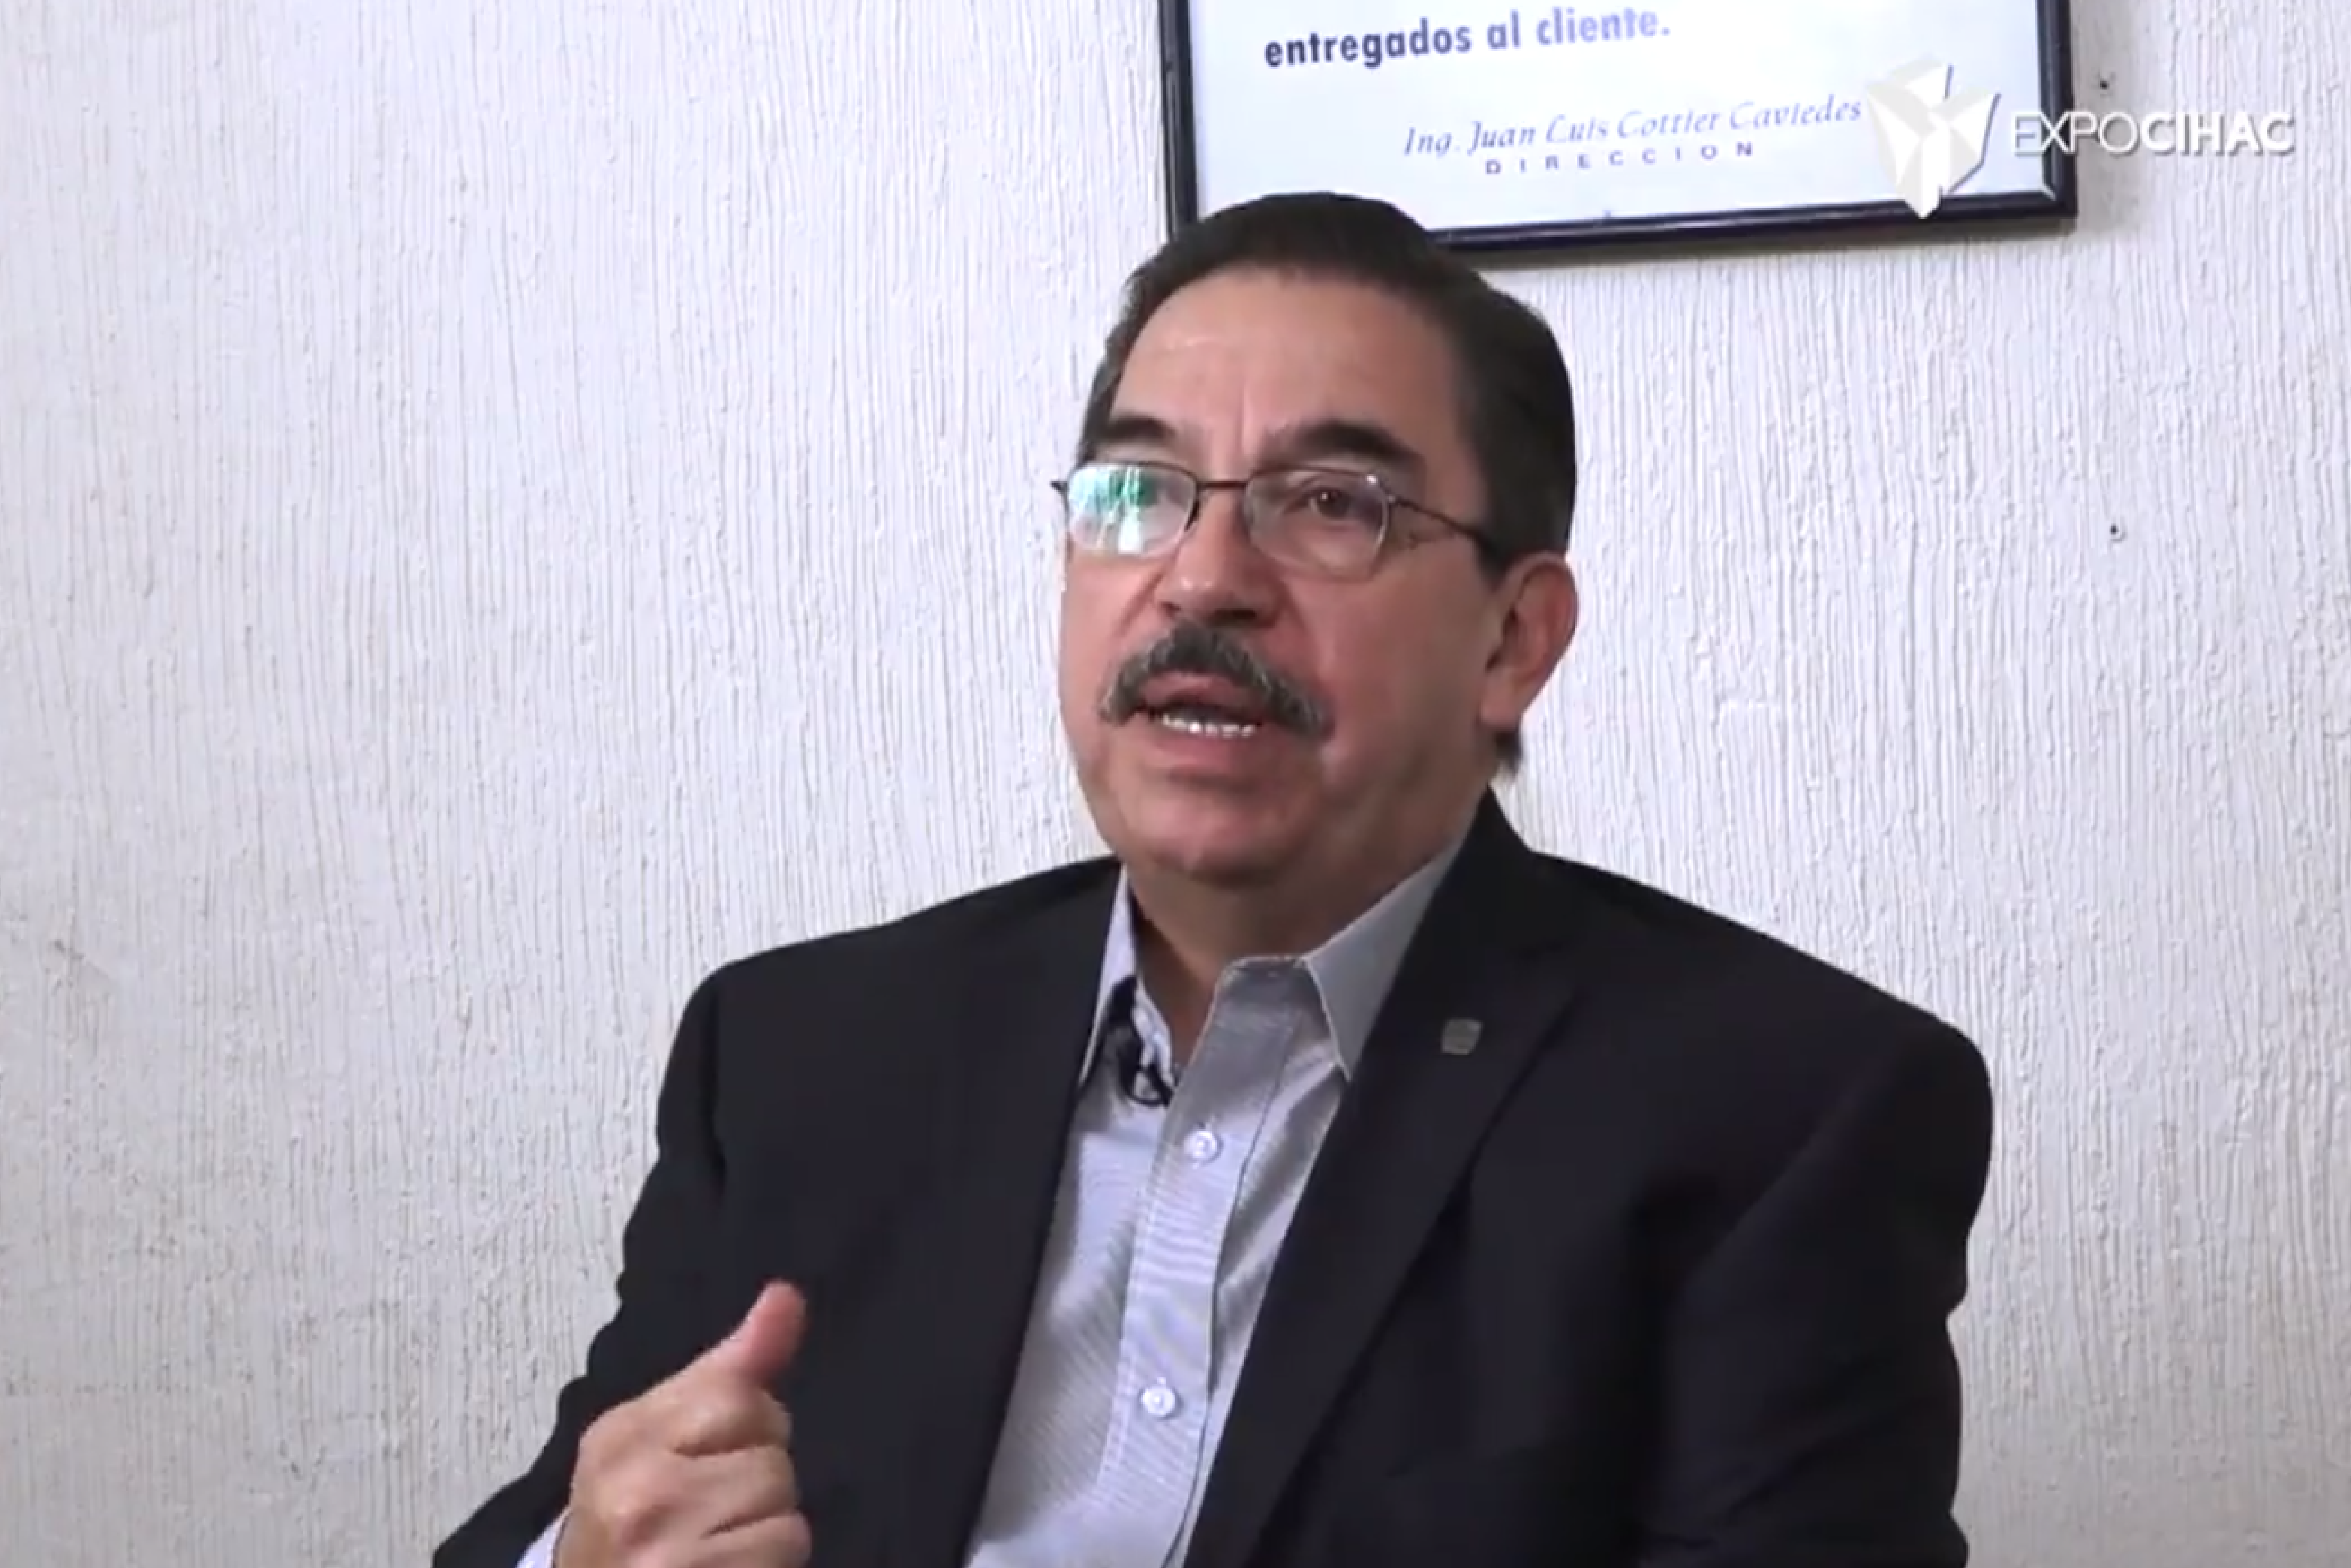 Video: Juan Cottier Caviedes Jefe del Departamento de Construcción en la Facultad de Ingeniería de la UNAM